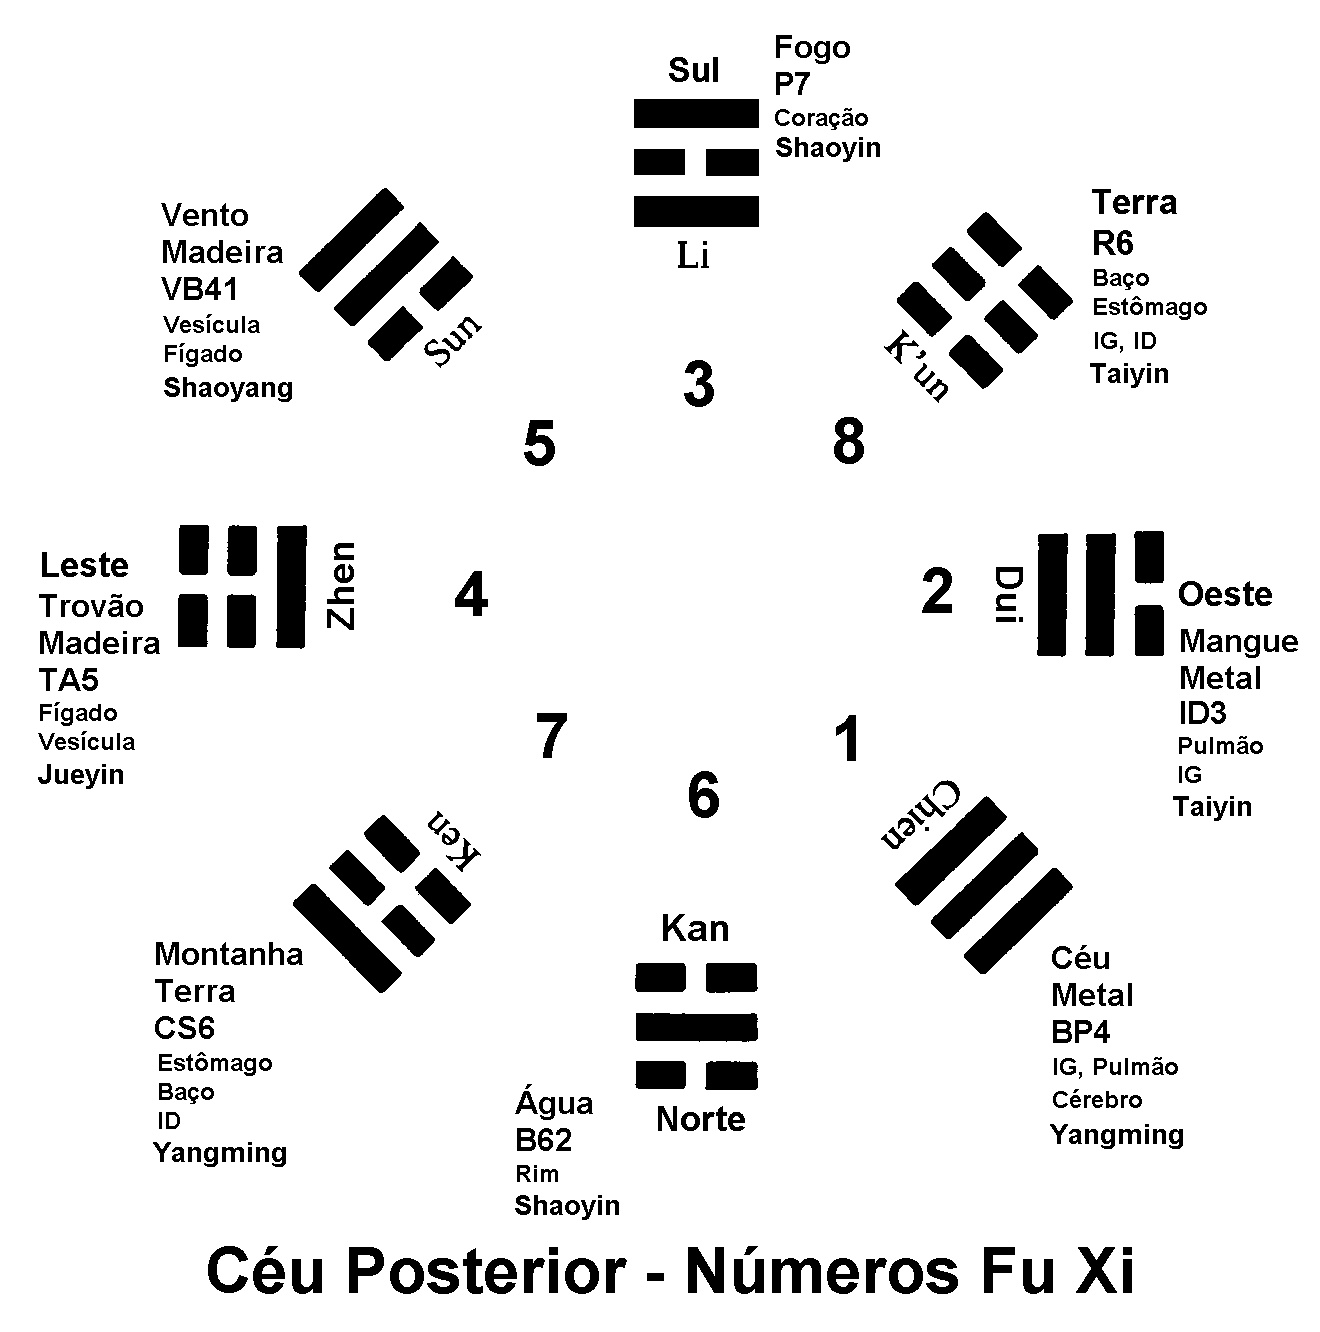 8 Trigramas em painel de Céu Posterior, mas com números de Céu Anterior.